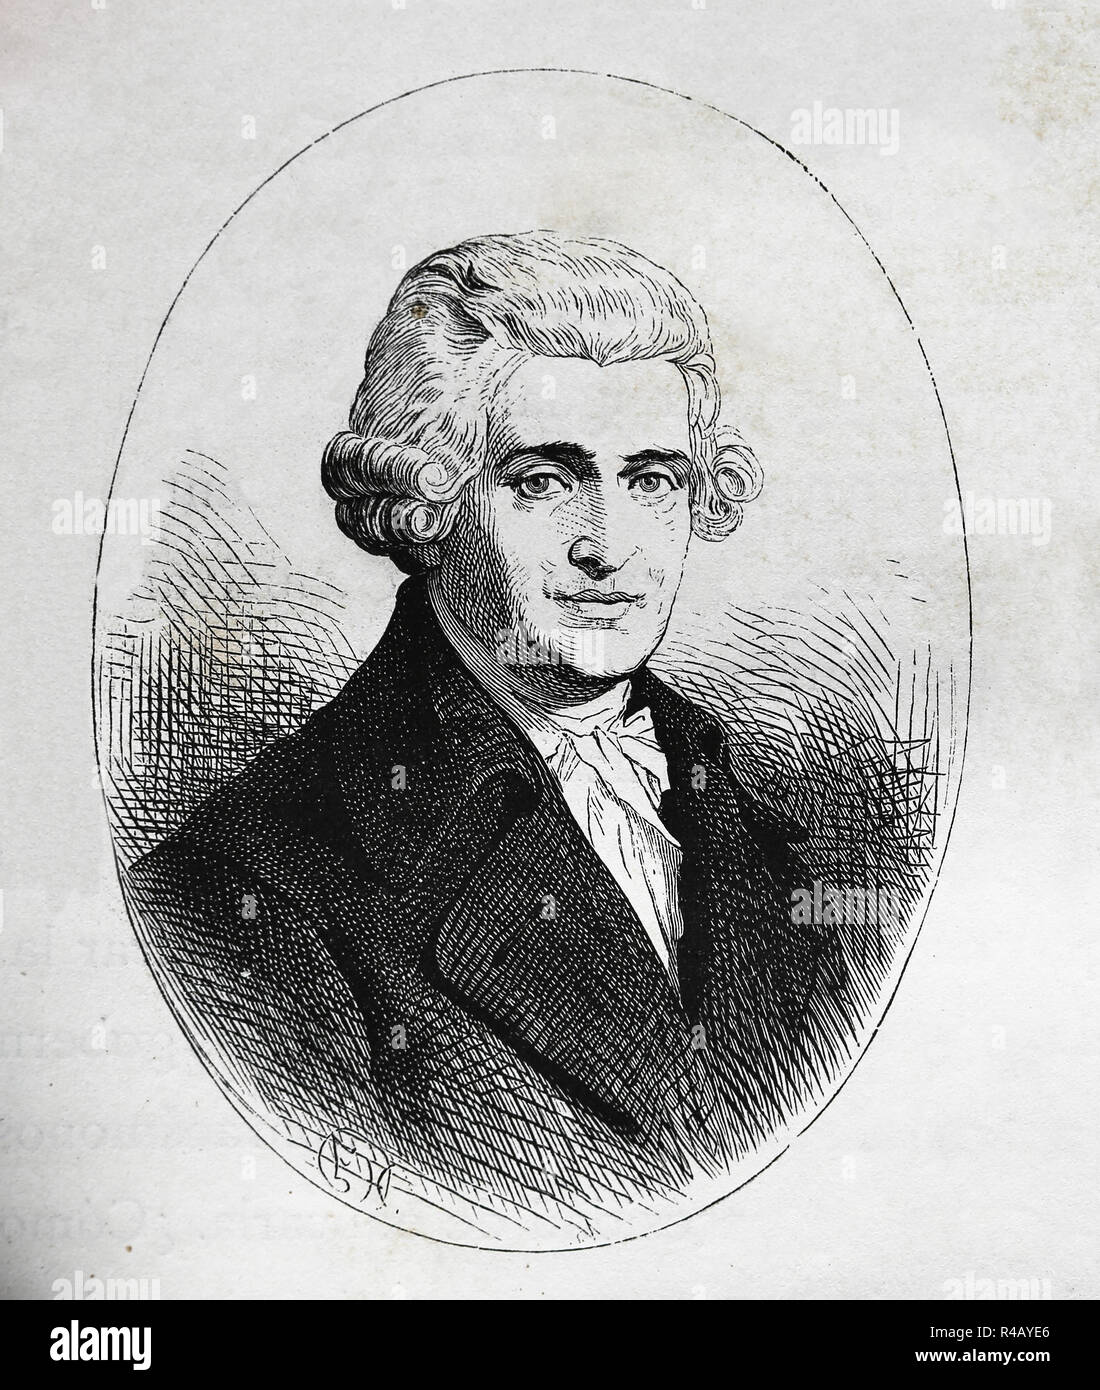 Joseph Haydn (1732-1809). Compositeur autrichien de la période classique. Gravure de Germania, 1882. Banque D'Images